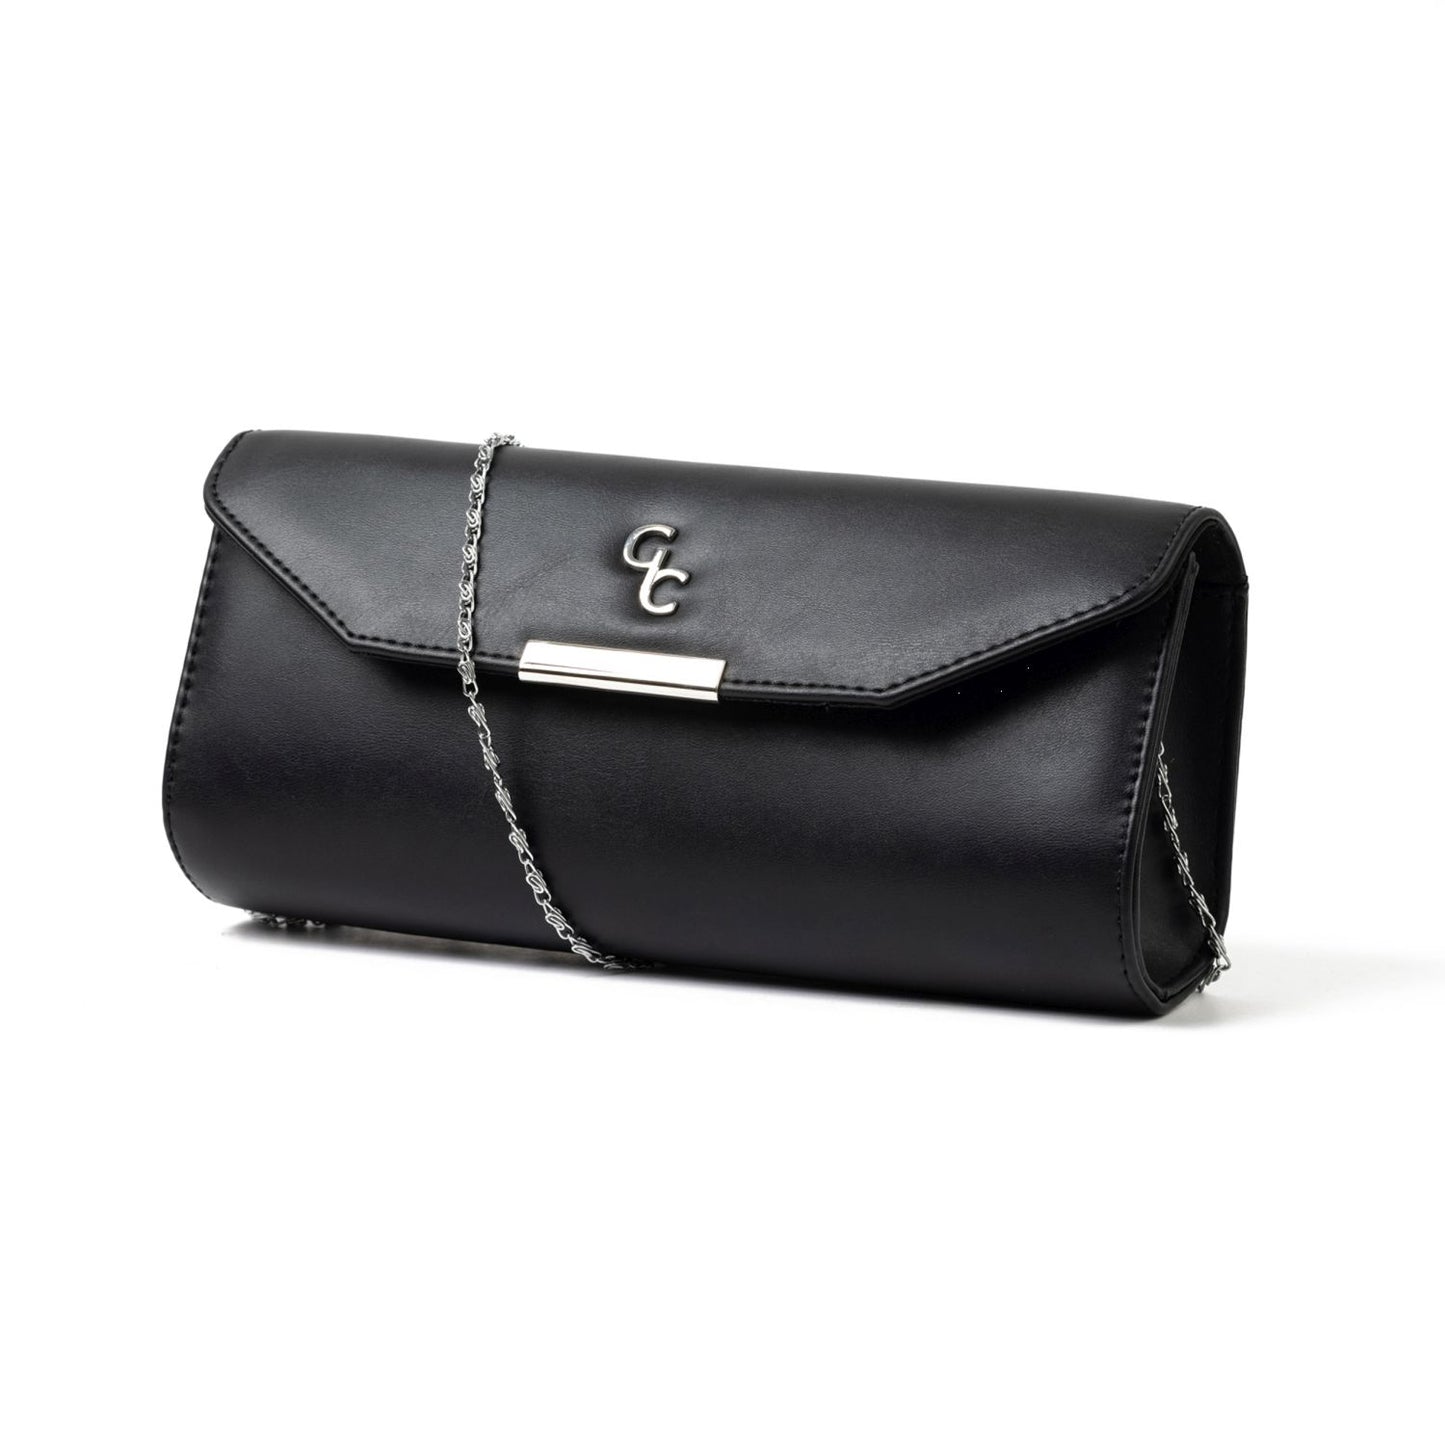 Galway Irish Crystal Handbags - Ladies Clutch Bag, 10.4”L x 2.8”W x 4.9”H